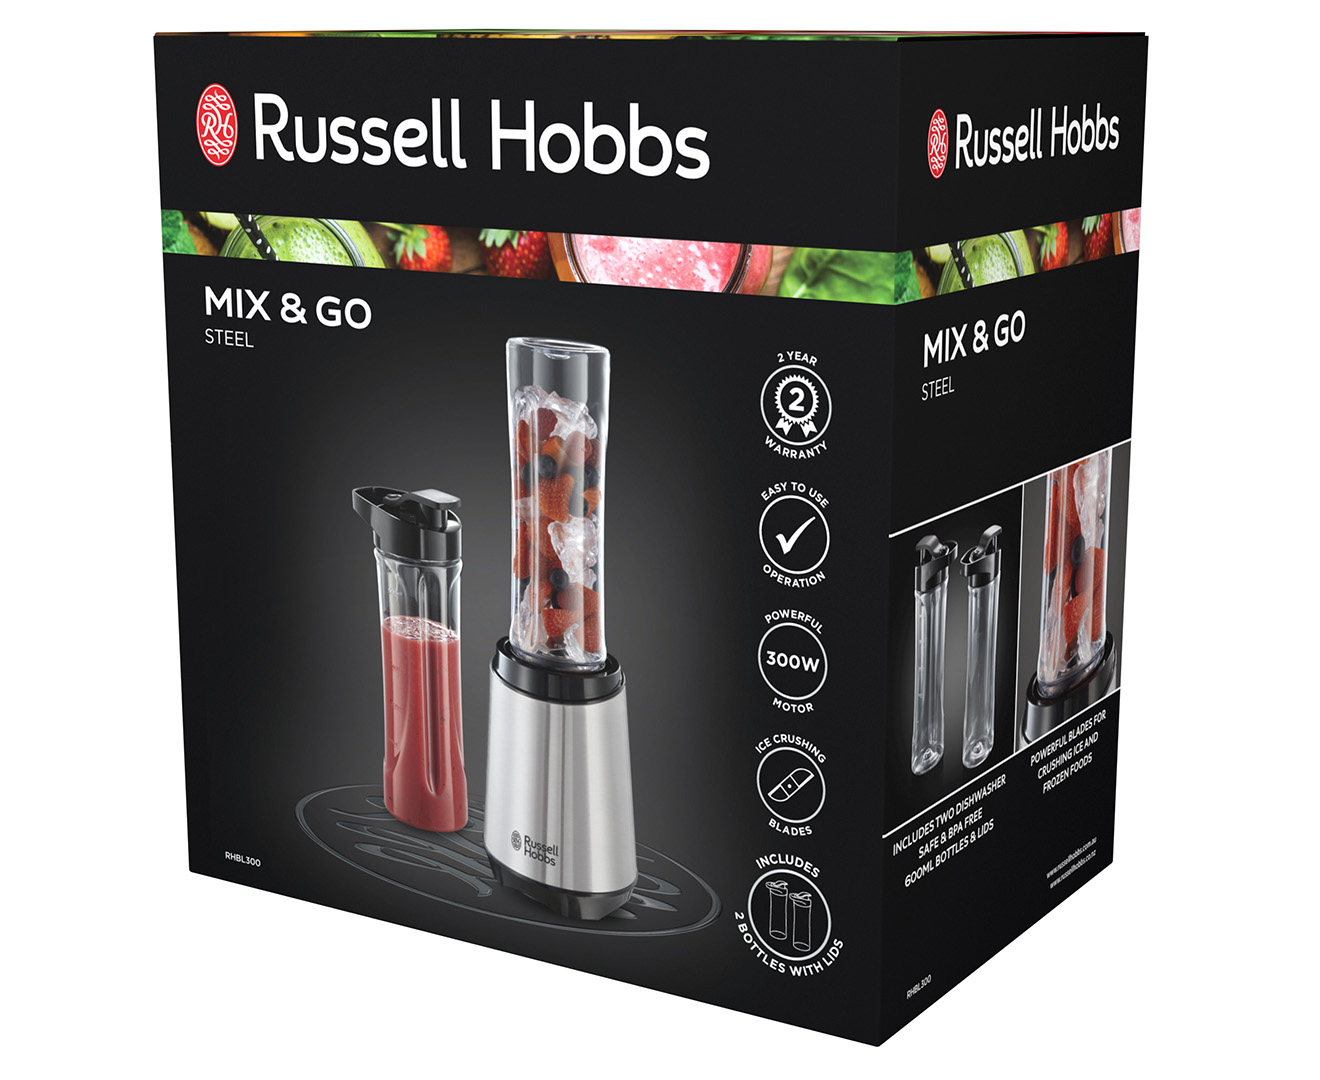 Russell Hobbs 300W Mix & Go Steel Blender - Silver RHBL300 |